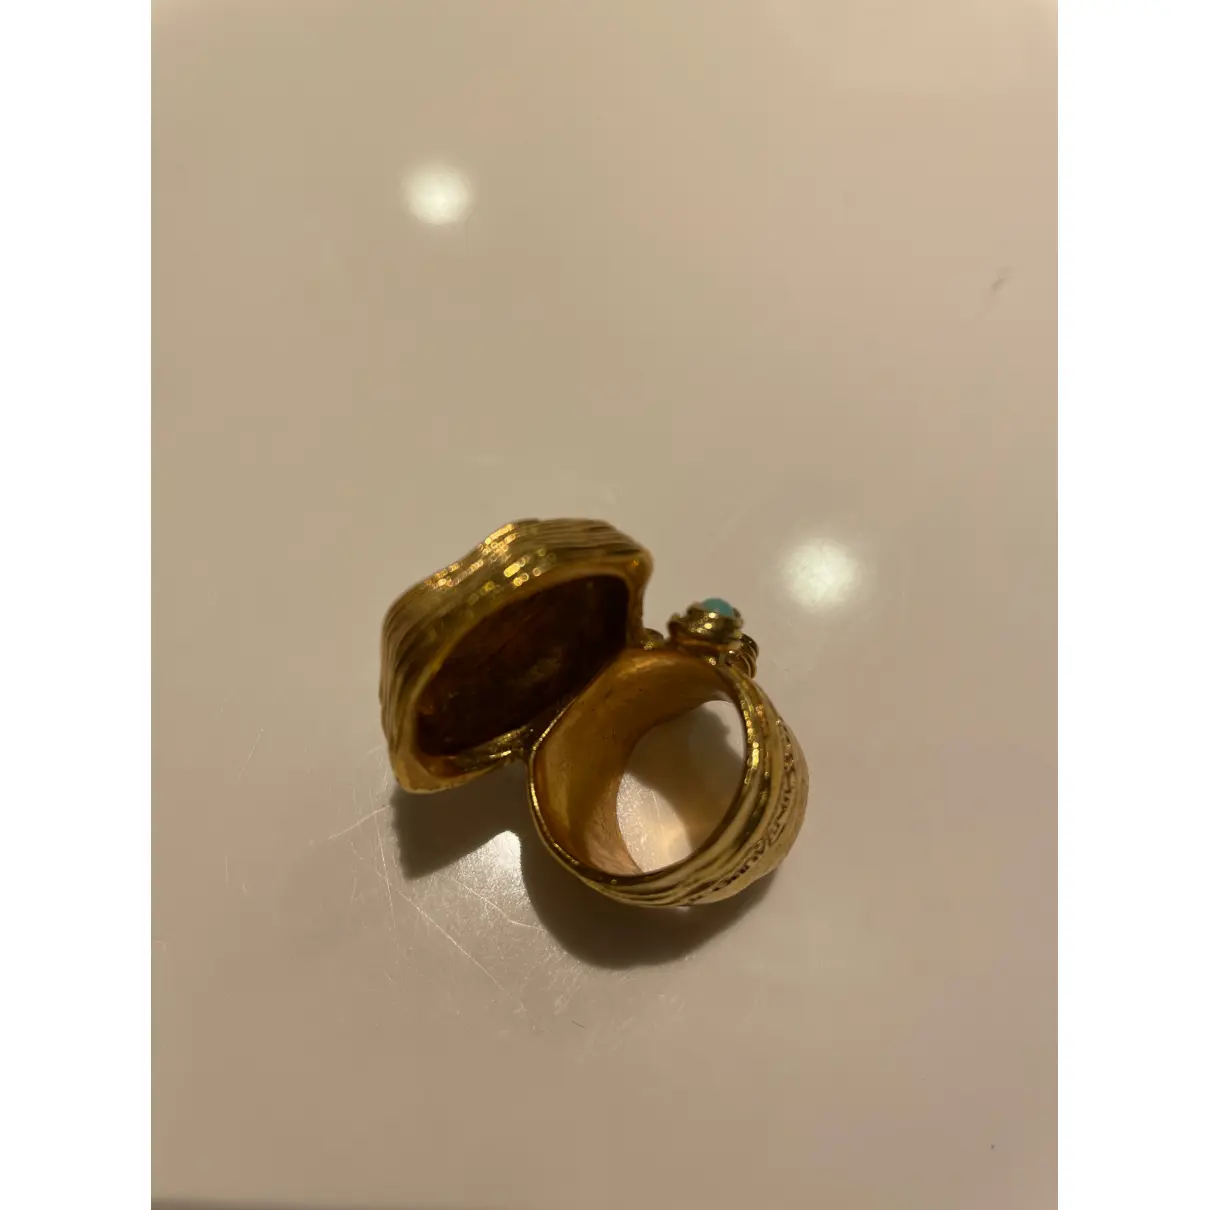 Buy Yves Saint Laurent Ring online